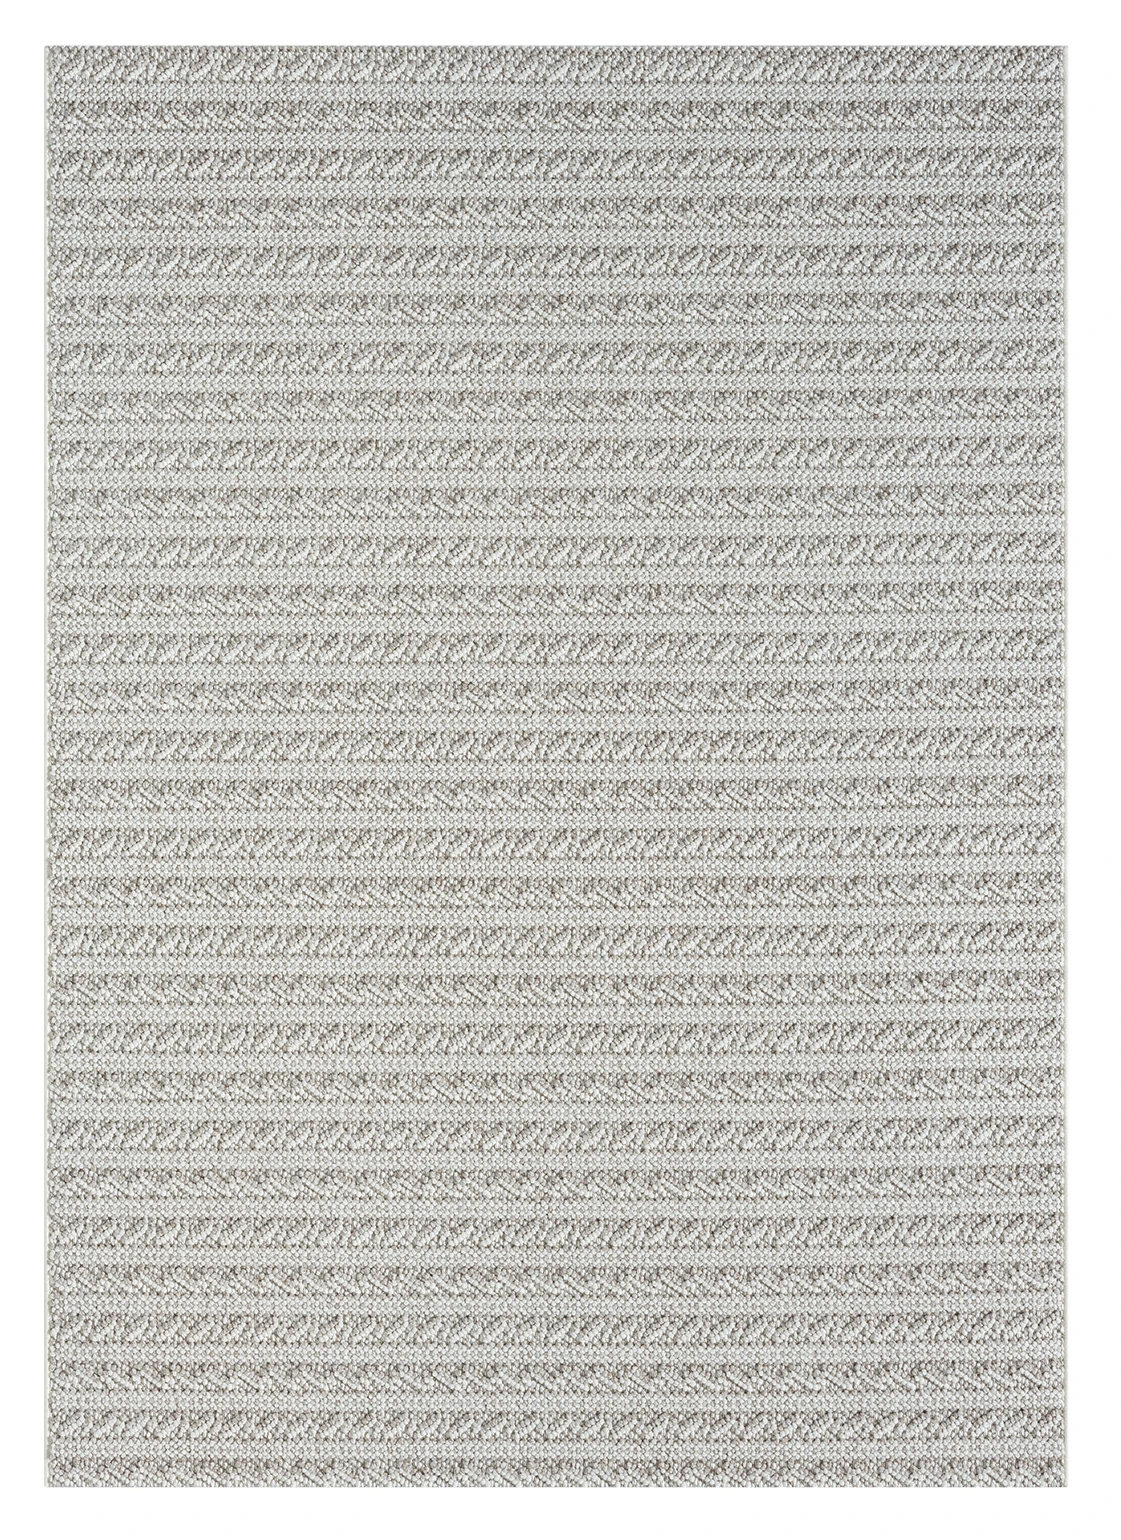 שטיח דגם CALIFORNIA לולאות משולבות צבע בז' לבן   : image 3